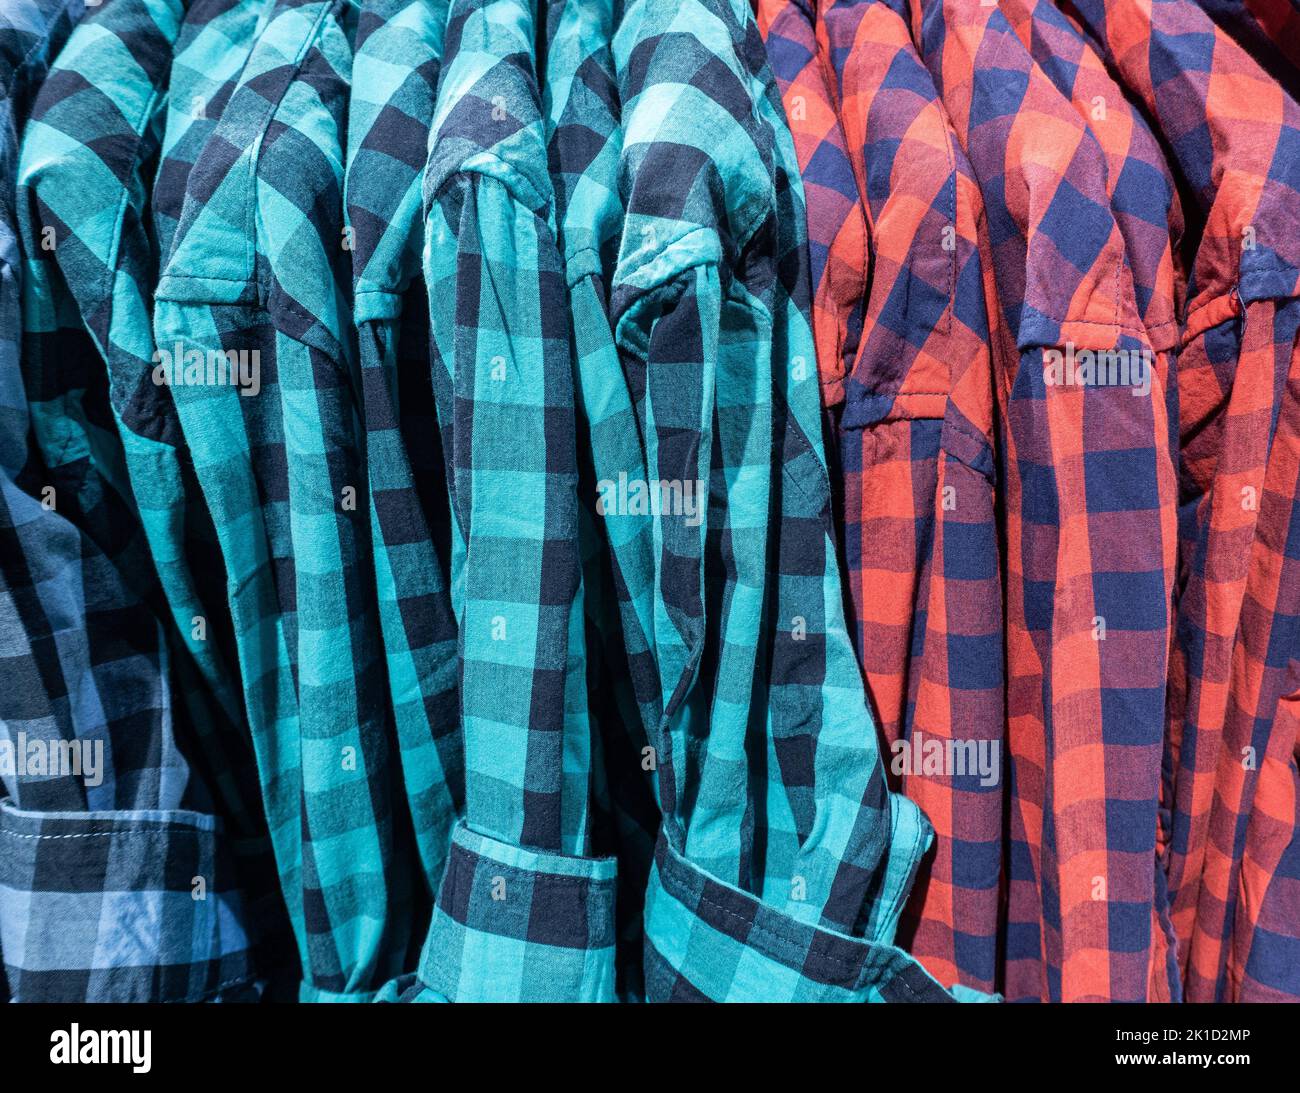 Chemises sur cintres dans le magasin de vêtements. Banque D'Images